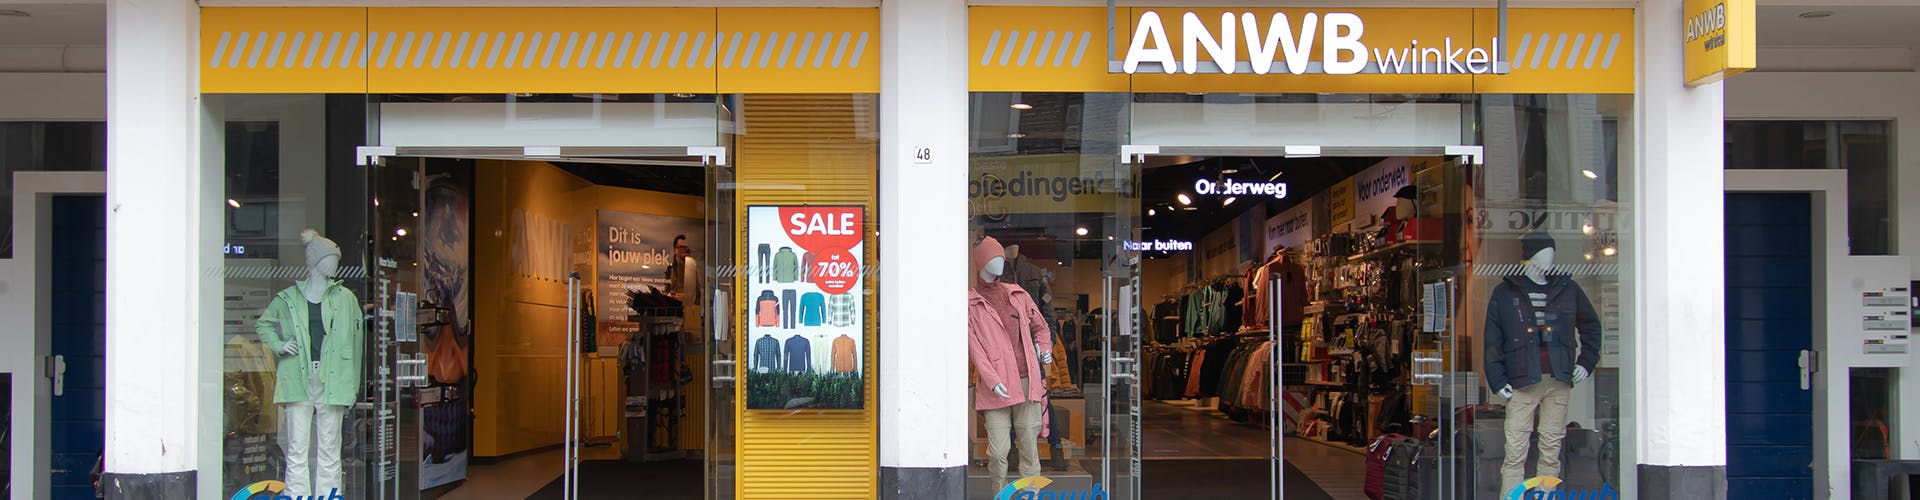 Ineenstorting Visa boete ANWB Winkel Groningen | ANWB Webwinkel